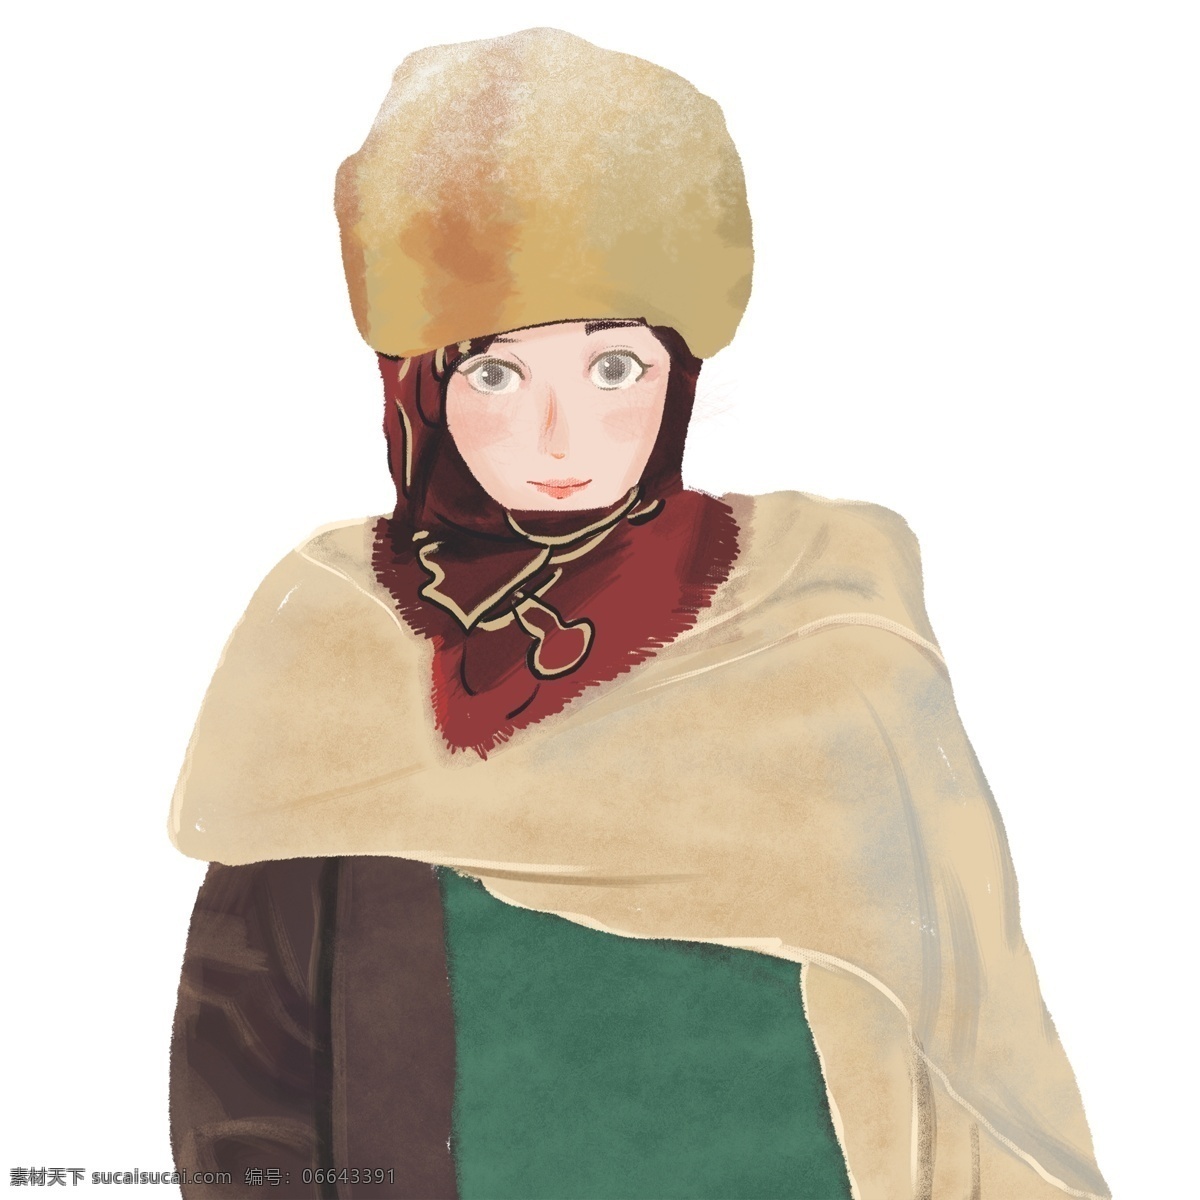 穿 冬装 漂亮 蒙古 女孩 冬季 插画 卡通 手绘 女生 人物设计